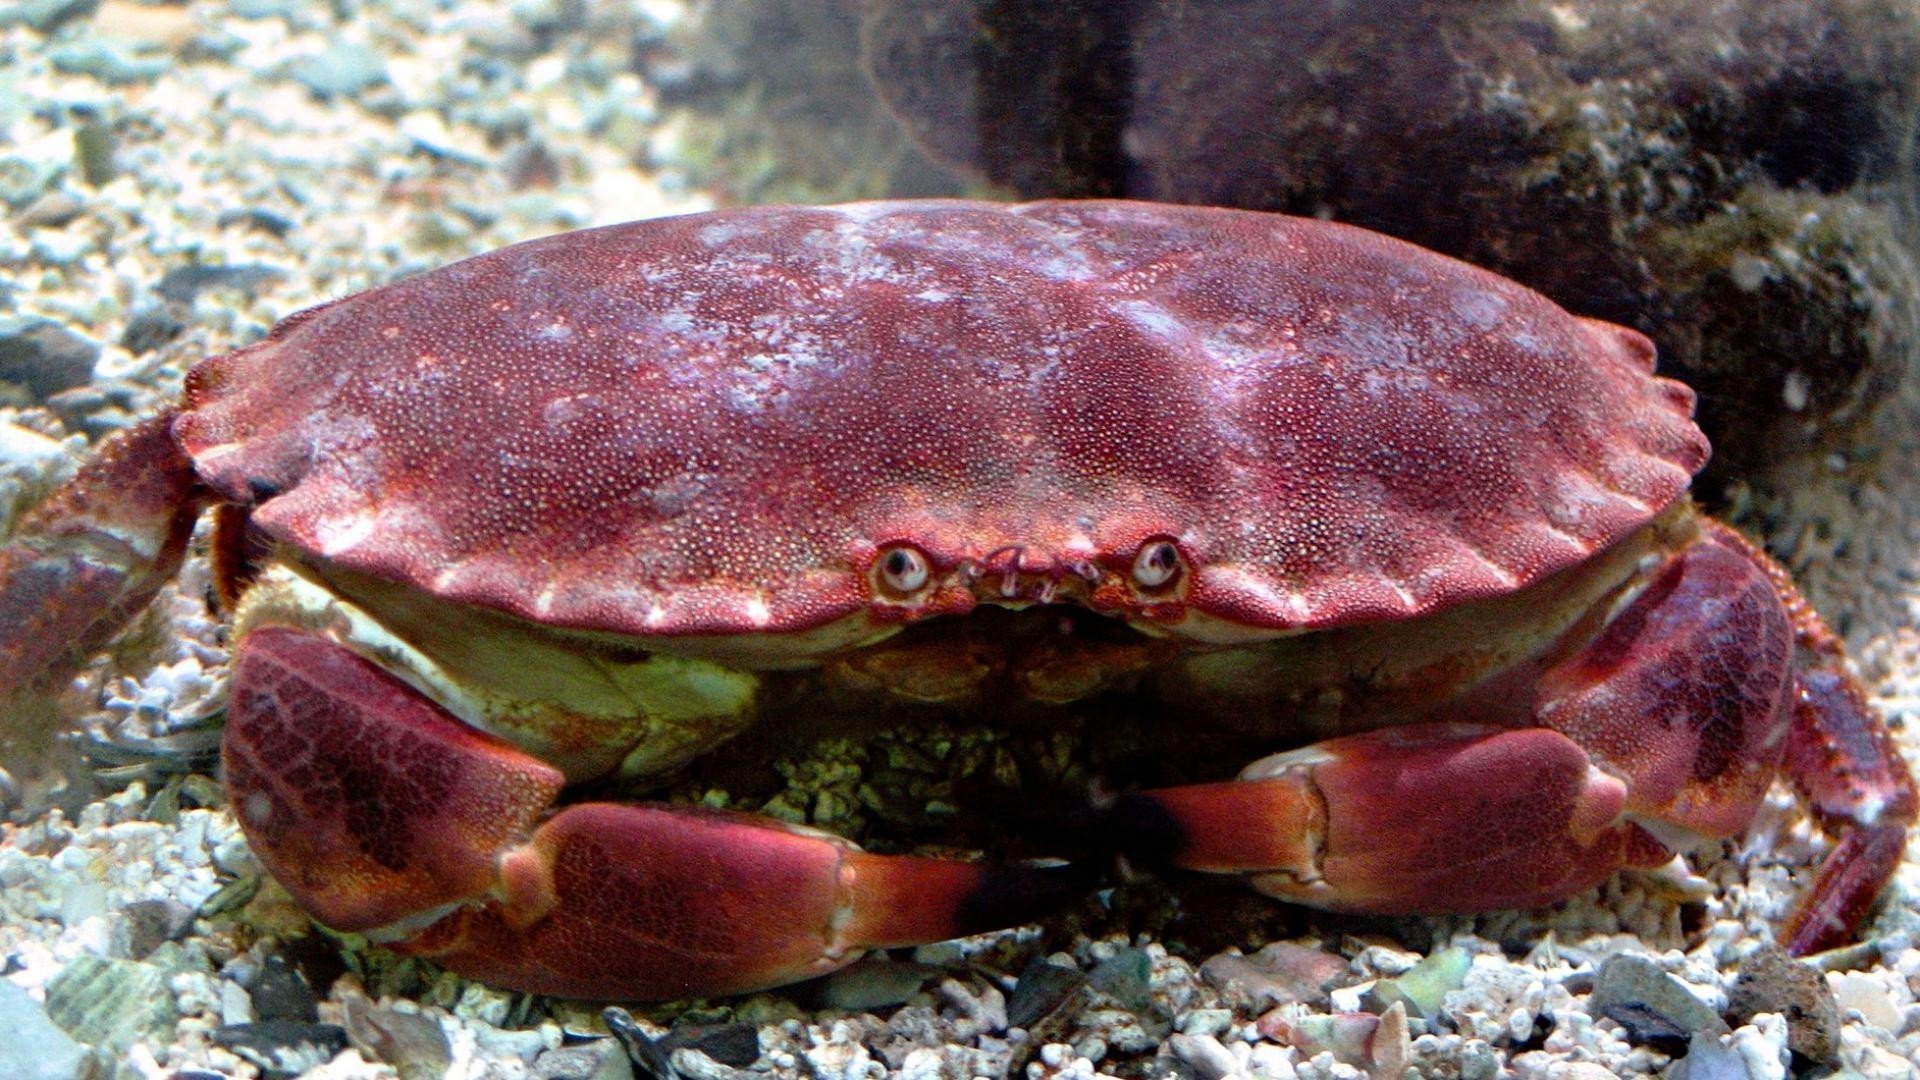 животные краб рачок моллюски беспозвоночных рыбы подводный океан море коготь оболочка лобстер дикой природы морской природа водный морепродукты воды еда